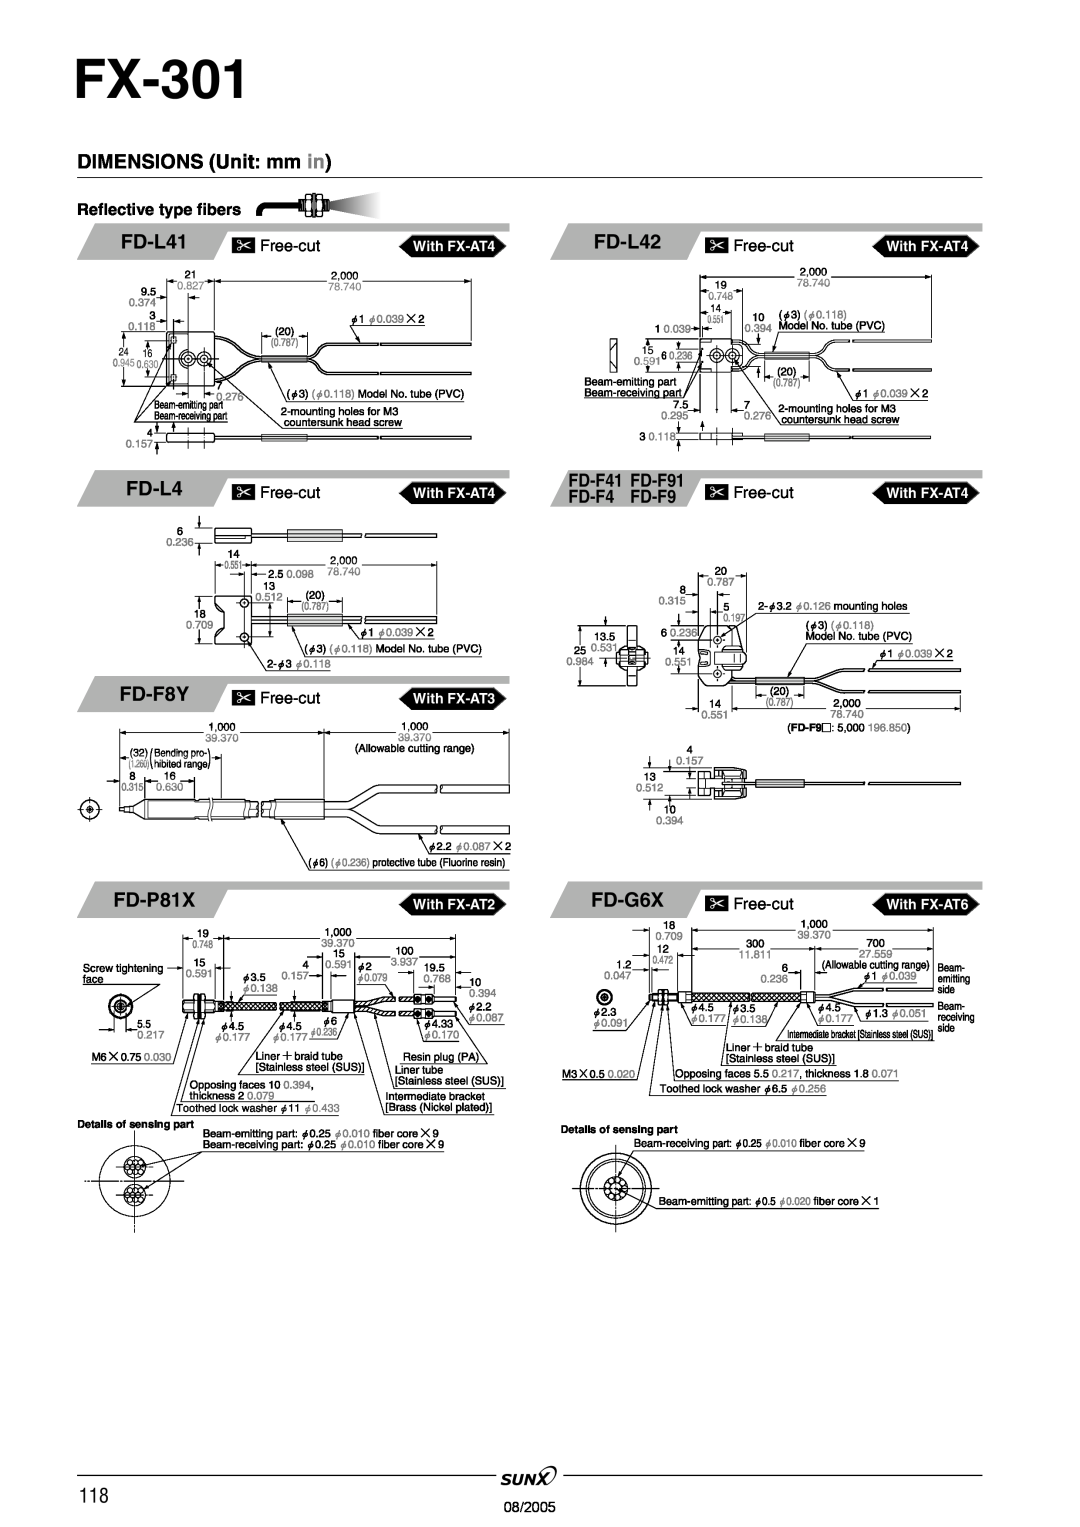 Panasonic FX-301 FD-L41, FD-L42, FD-F8Y, FD-P81X, FD-G6X, FD-F41, FD-F91, DIMENSIONS Unit mm in, Free-cut, 08/2005 